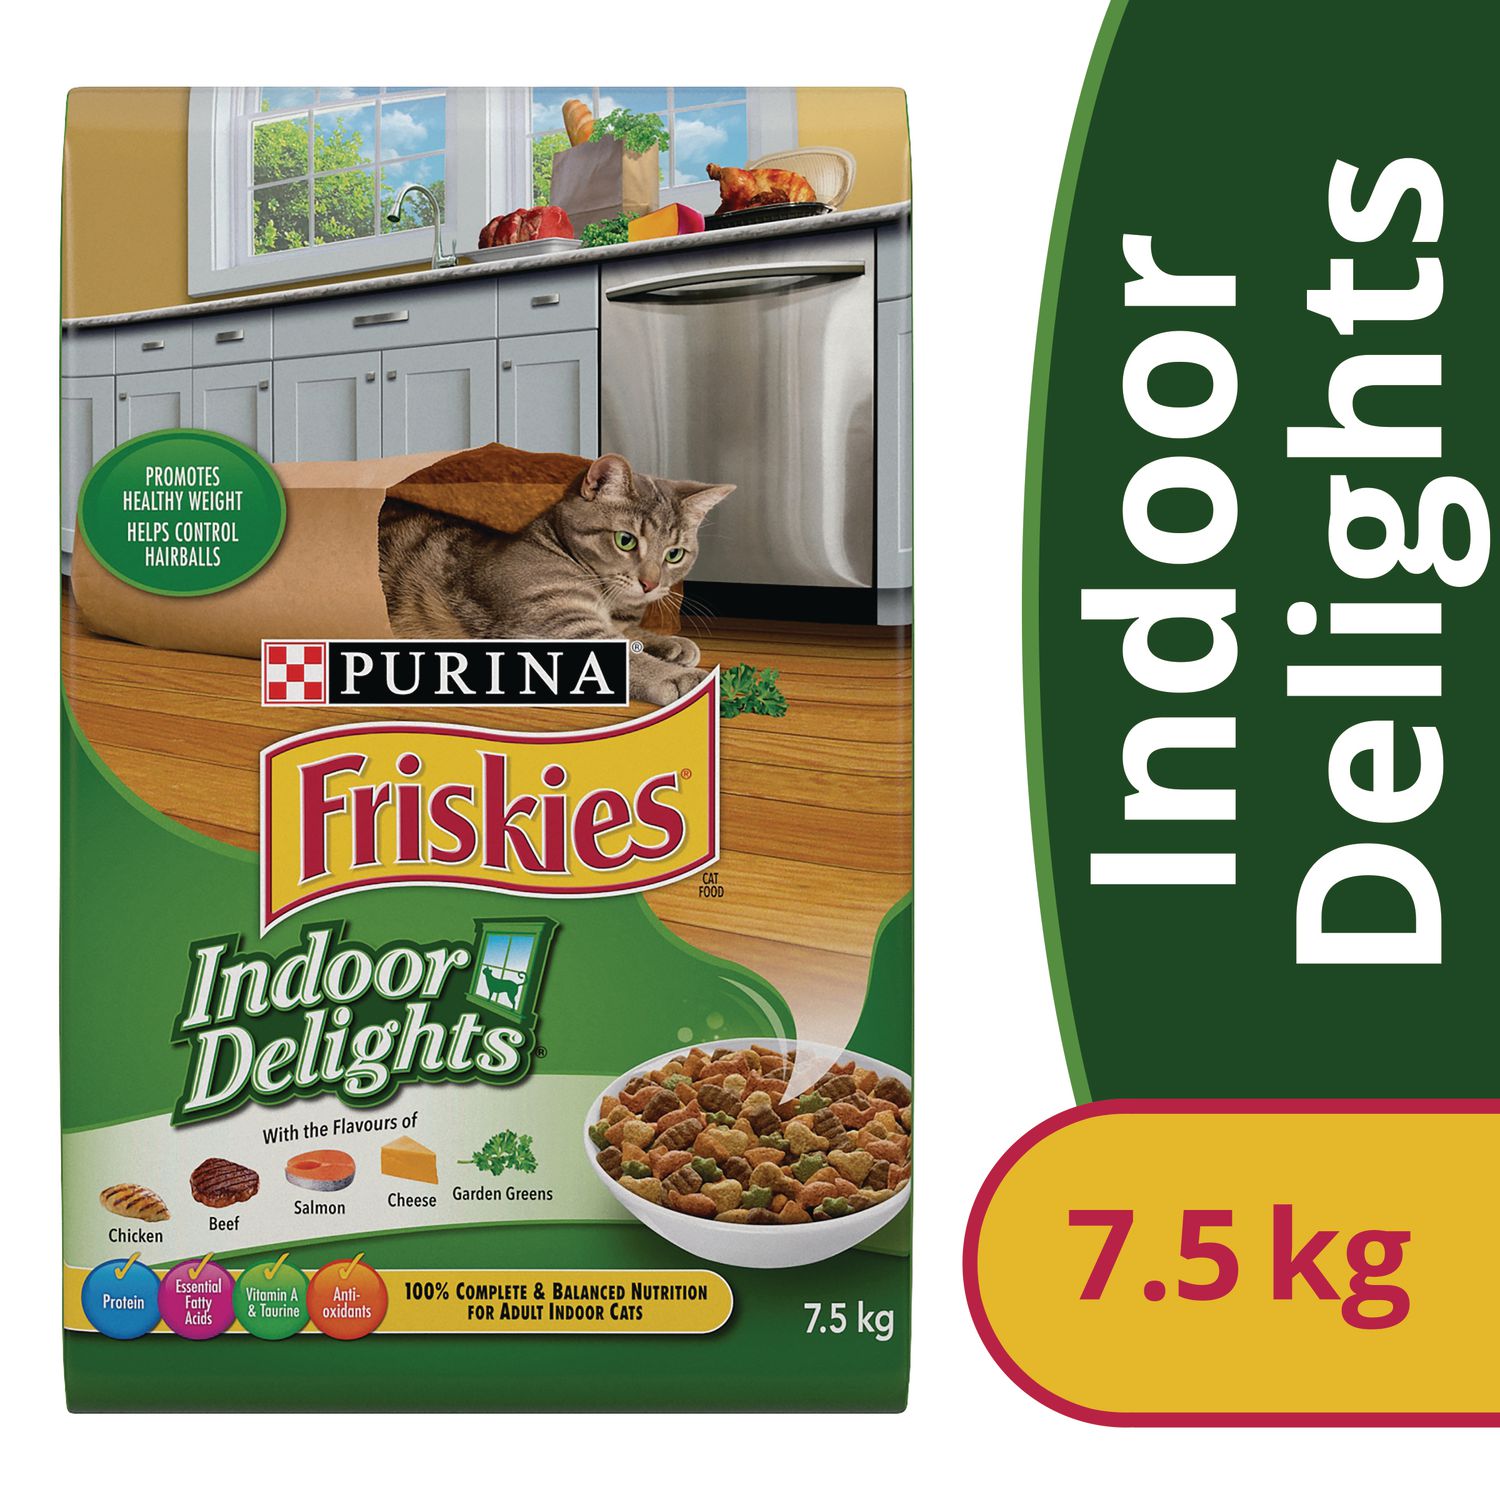 Friskies Indoor Delights Dry Cat Food 7.5 kg Walmart Canada